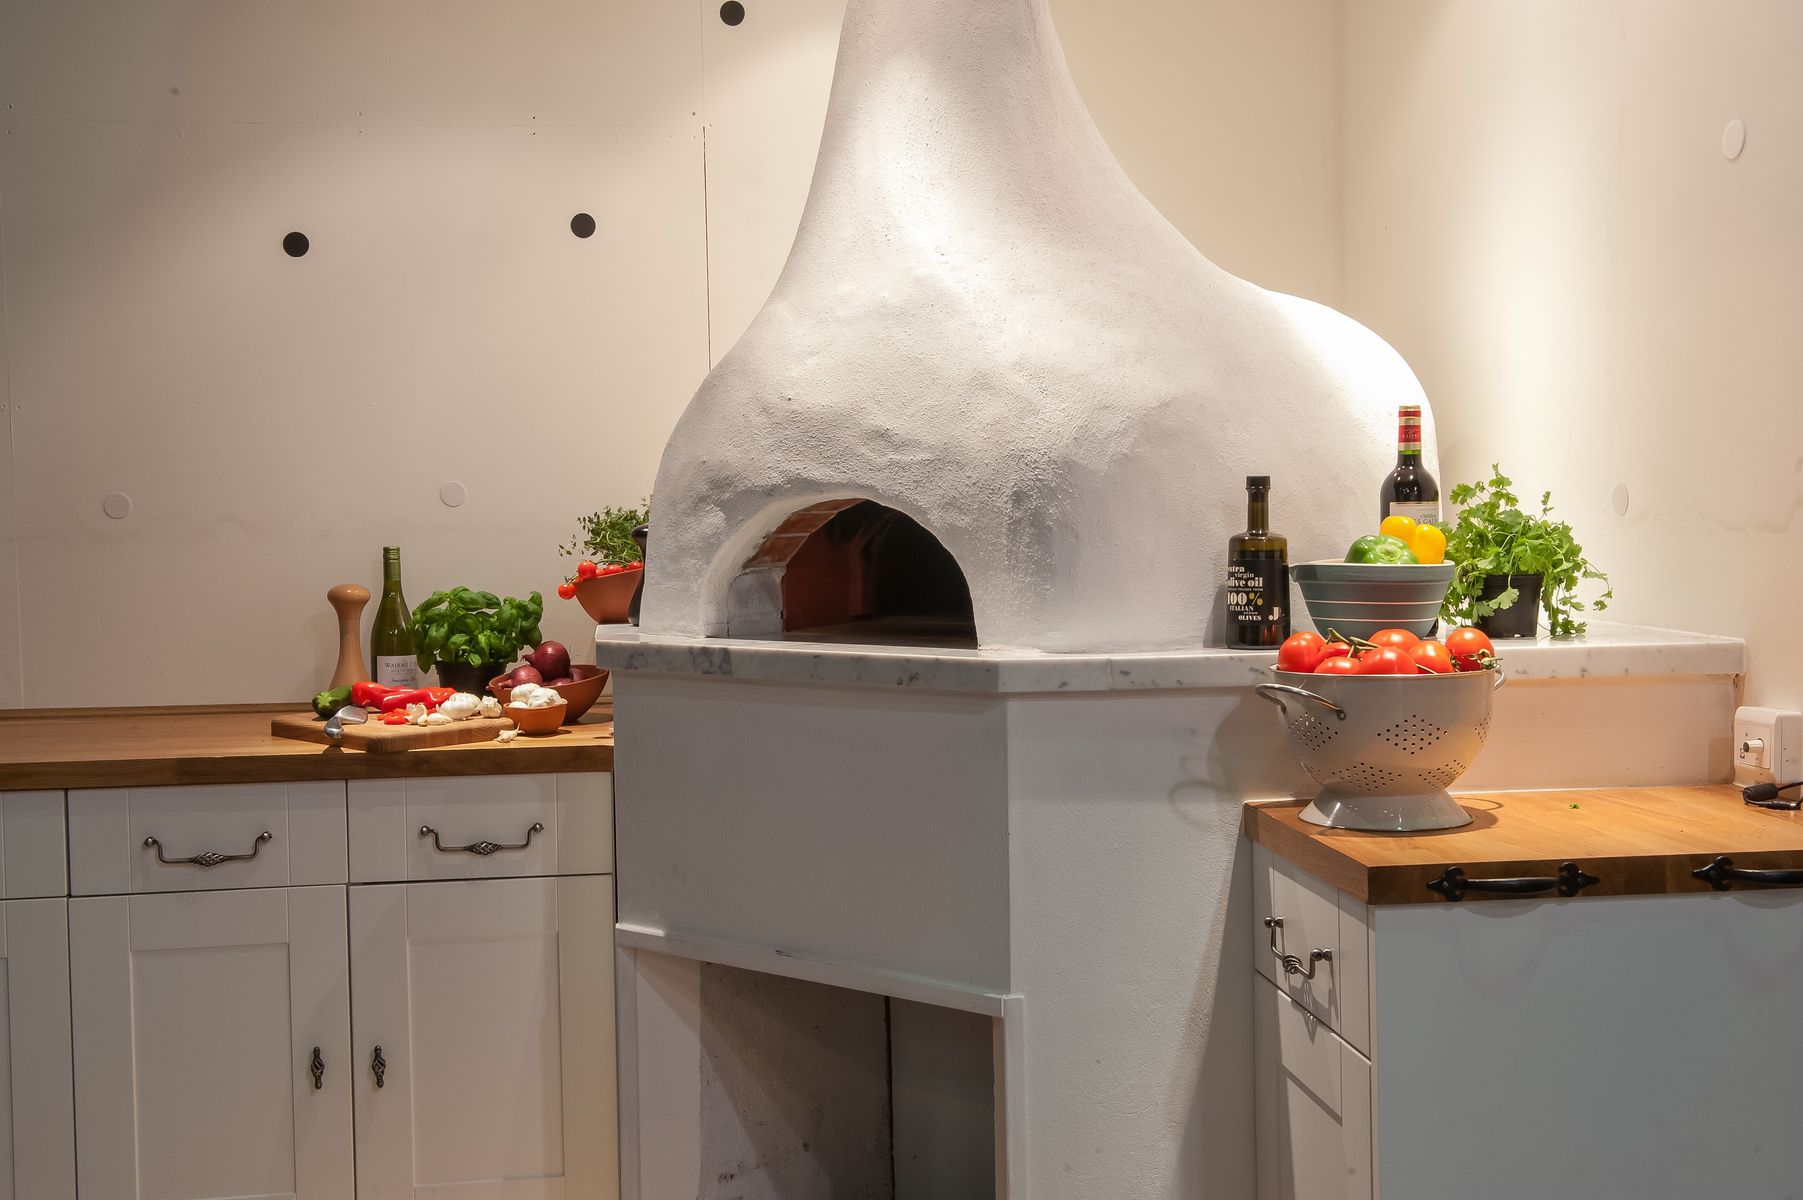 A Valoriani pizza oven kitchen installation.